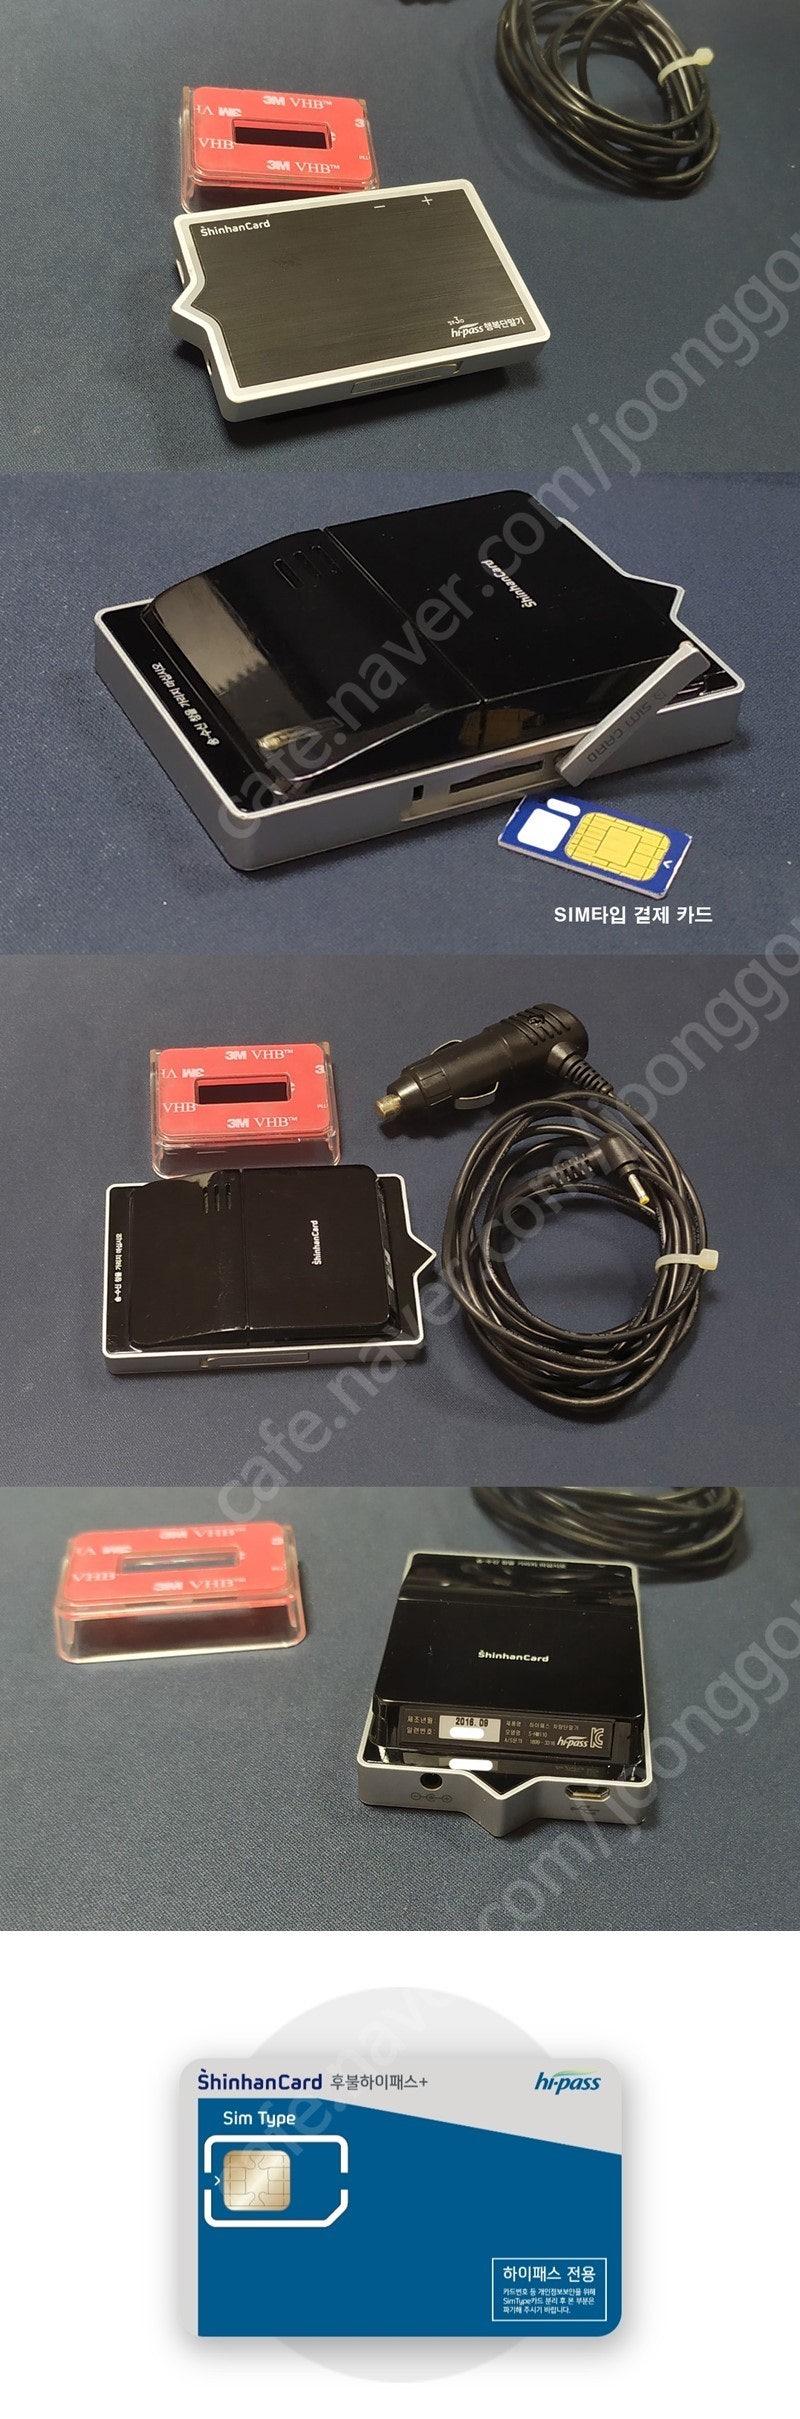 하이패스 단말기 모닝스테이션 S-HW110 SIM카드형 2만원